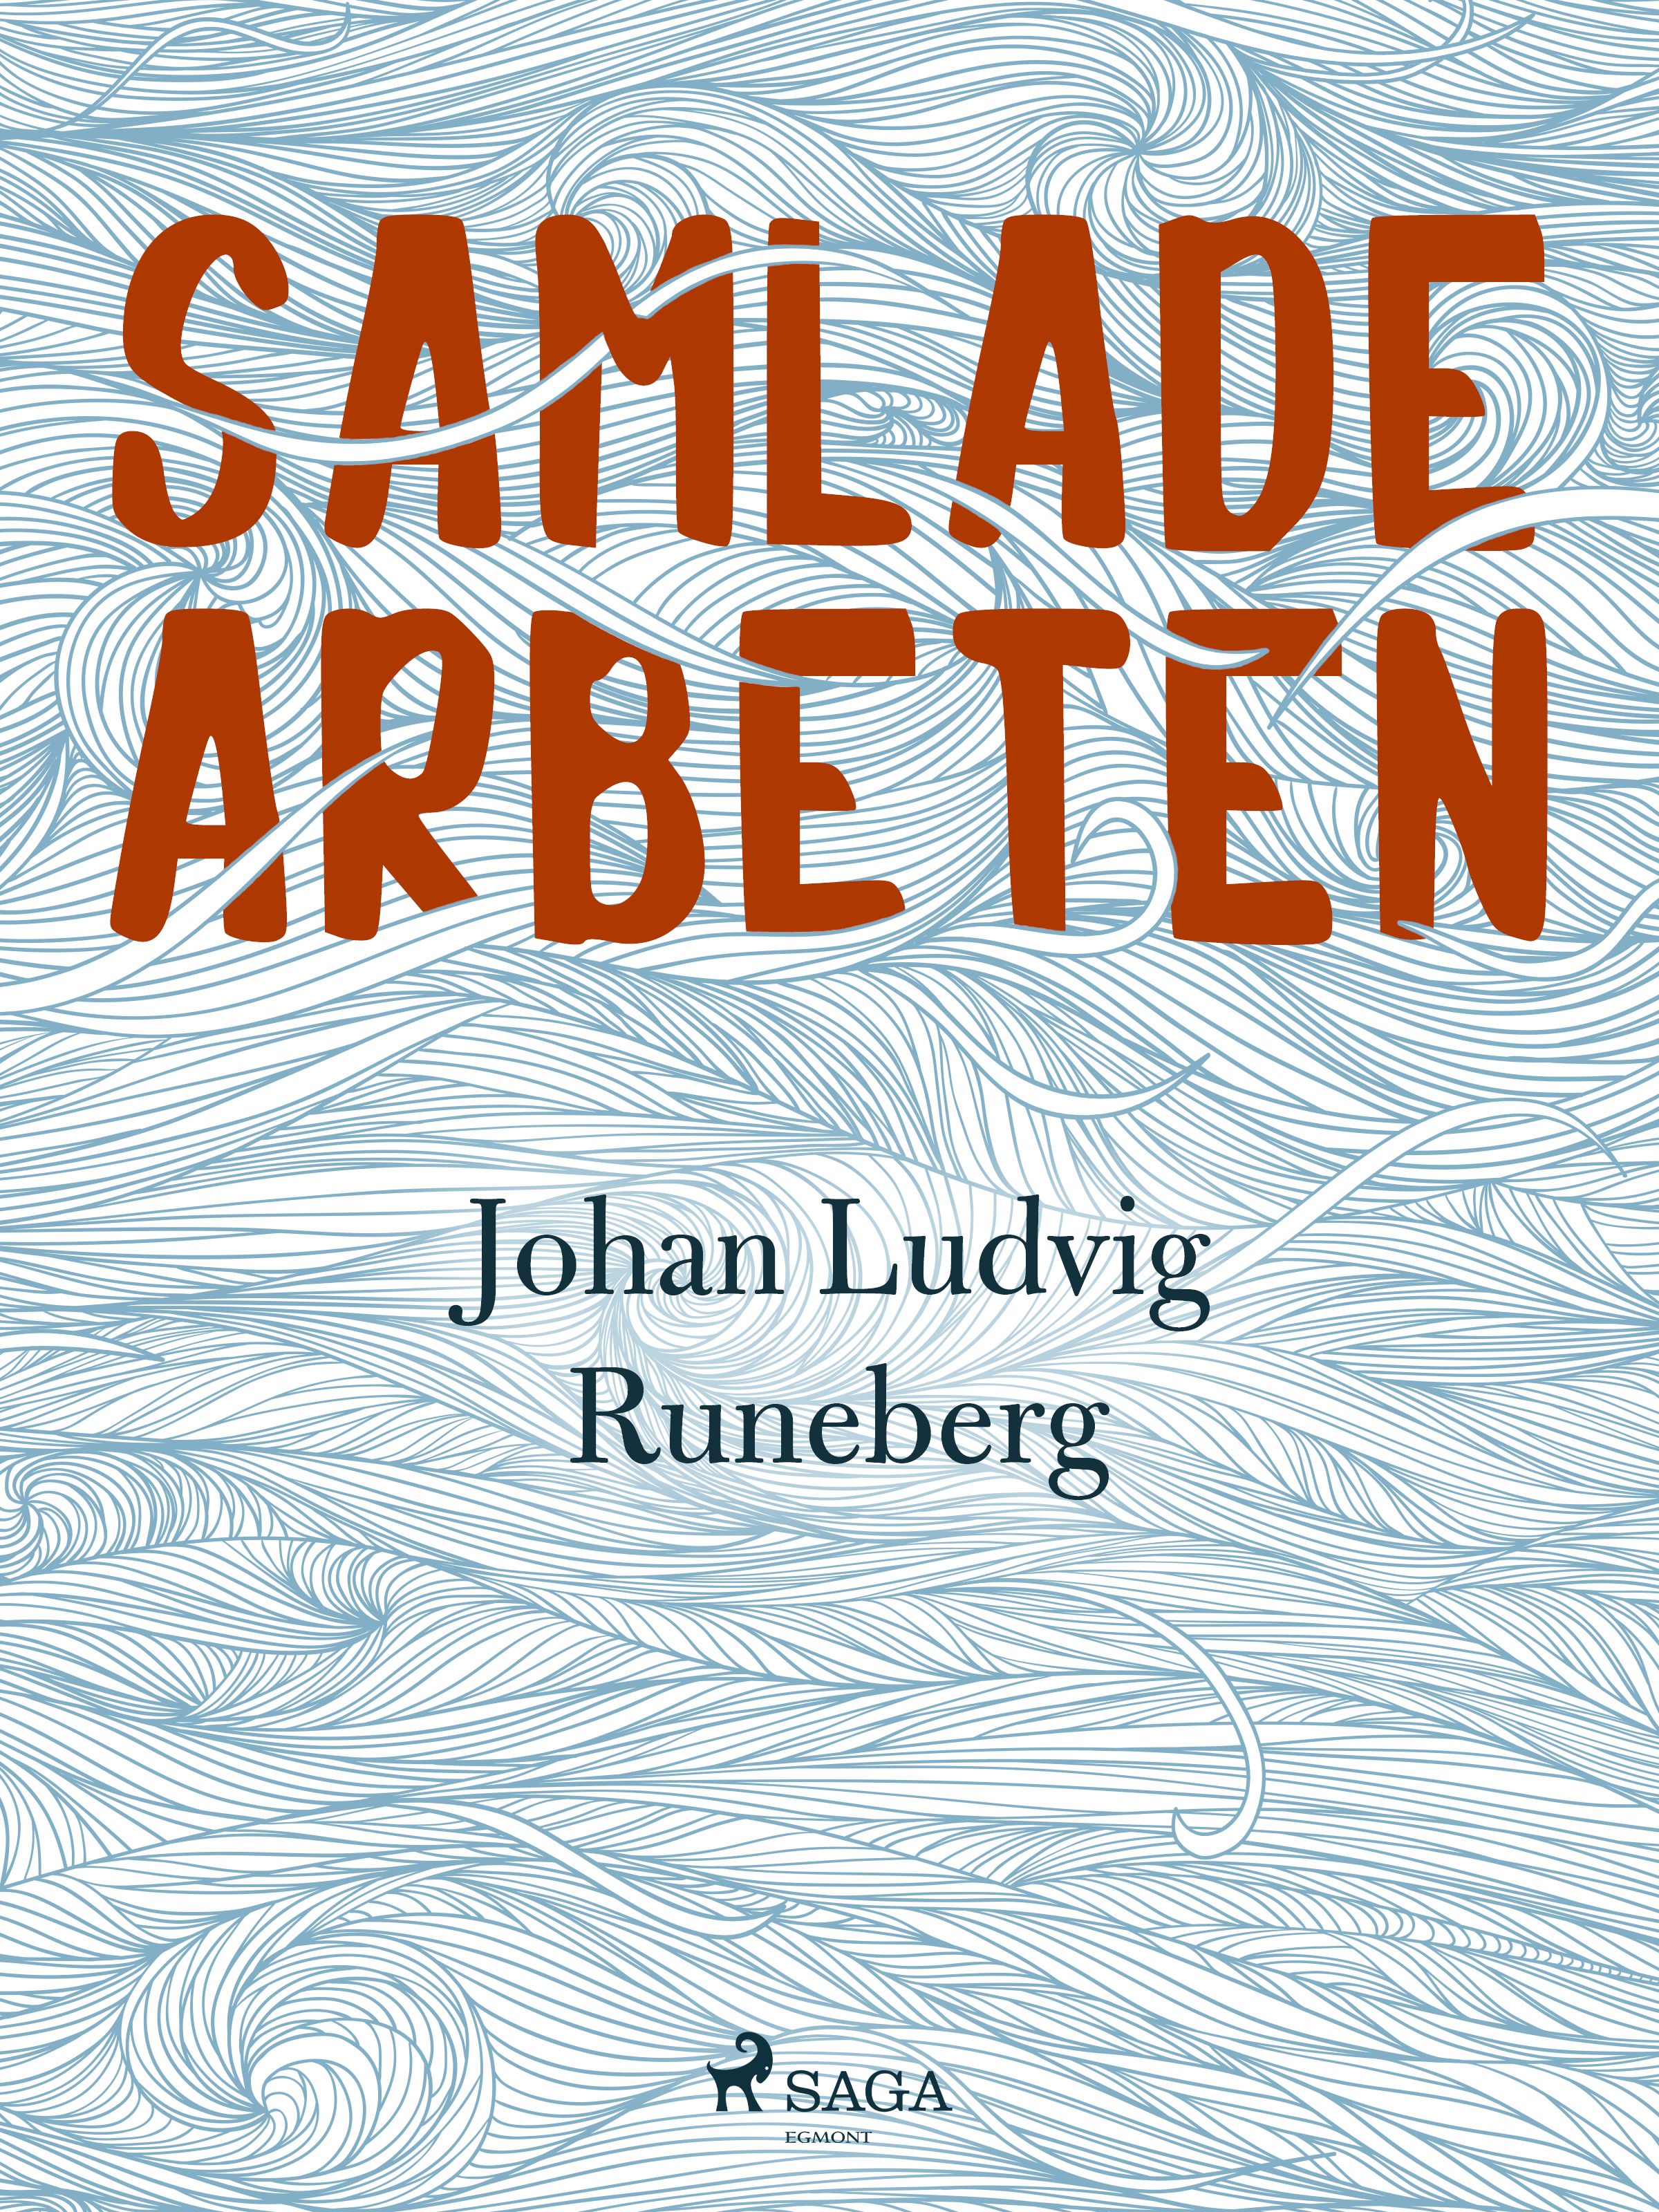 Samlade Arbeten, e-bok av Johan Ludvig Runeberg